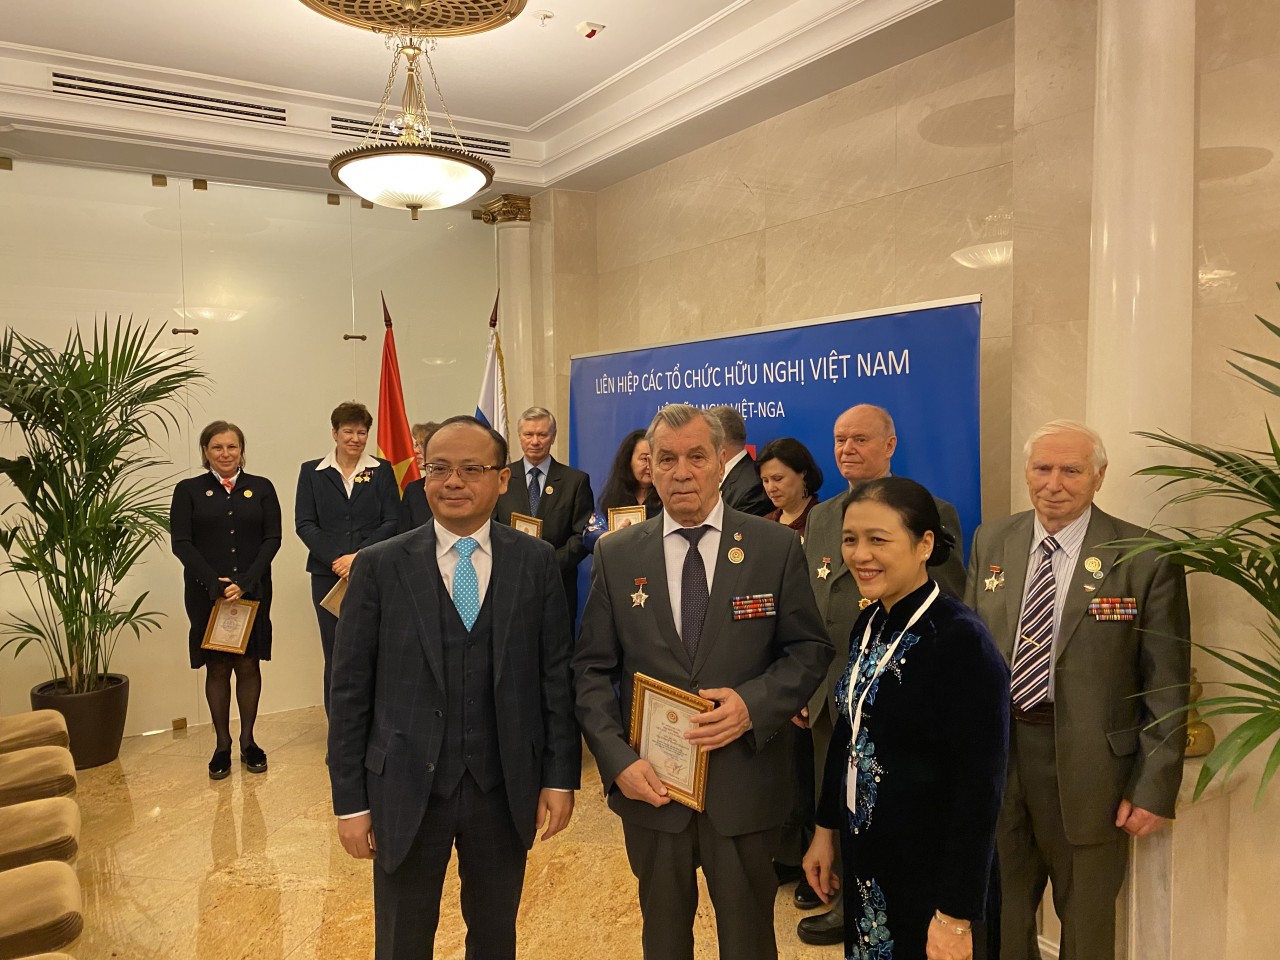 Nhiều hoạt động của Liên hiệp các tổ chức hữu nghị Việt Nam trong khuôn khổ chuyến thăm Nga của Chủ tịch nước Nguyễn Xuân Phúc